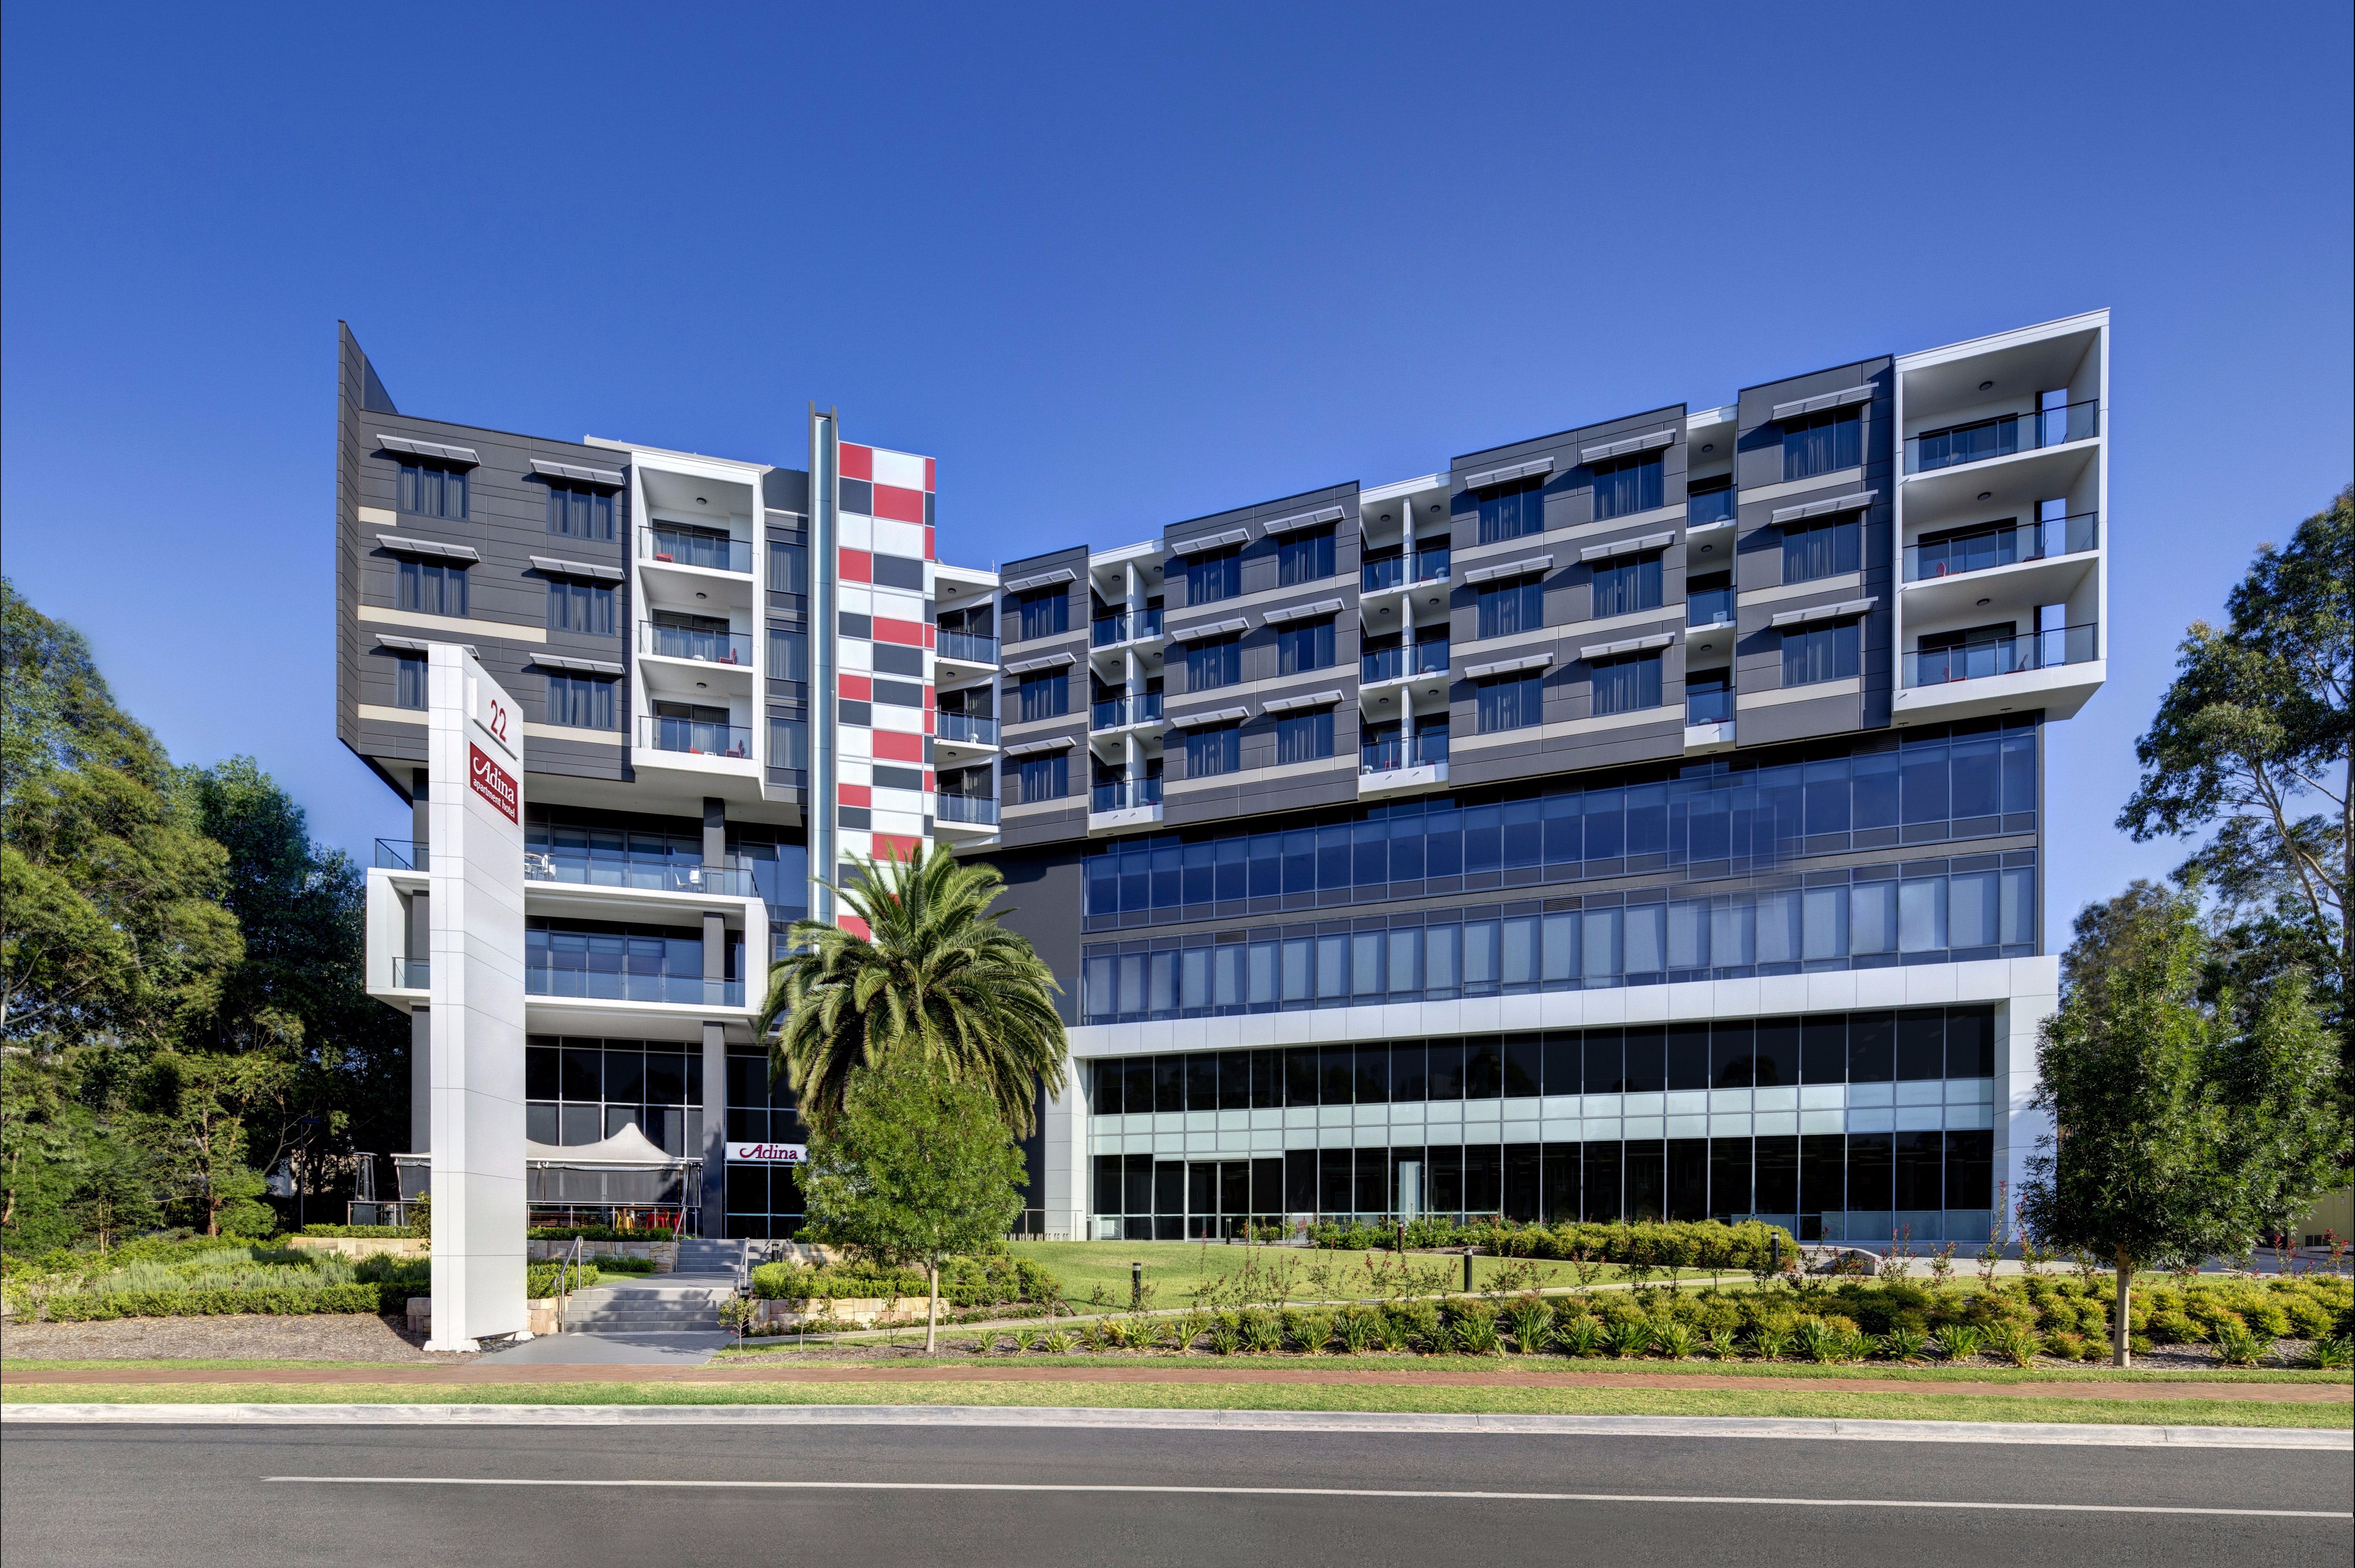 Adina Apartment Hotel Norwest Sydney - Kempsey Accommodation